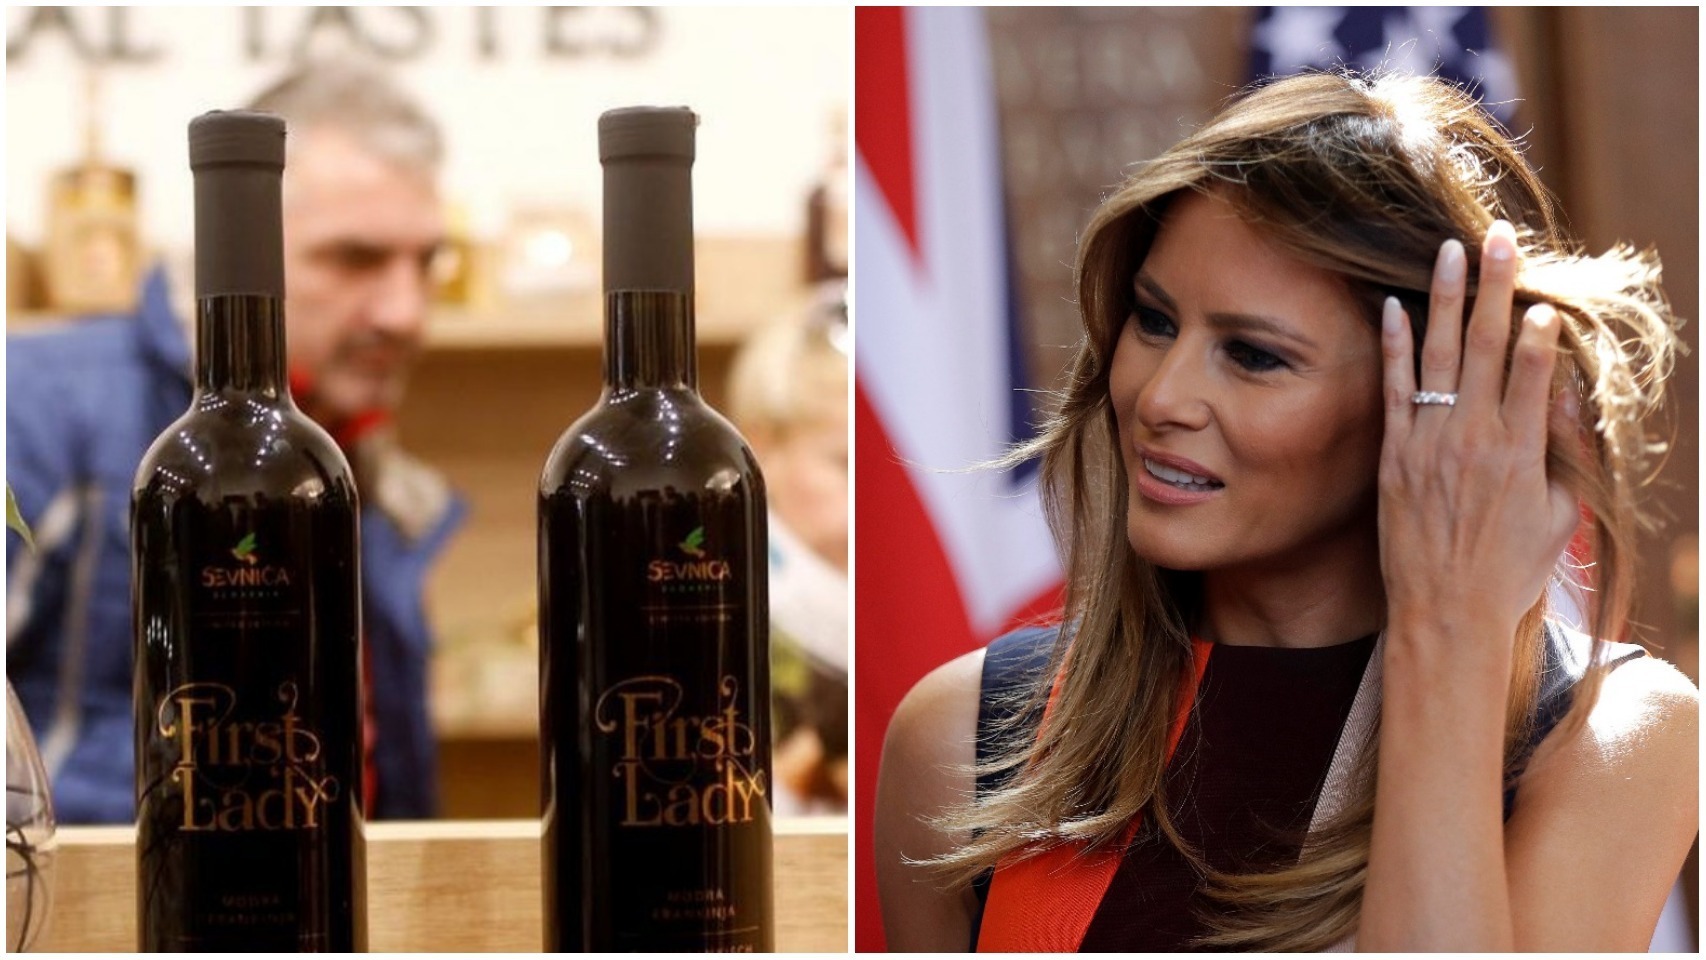 El vino inspirado en la Primera Dama estadounidense producido en su ciudad natal